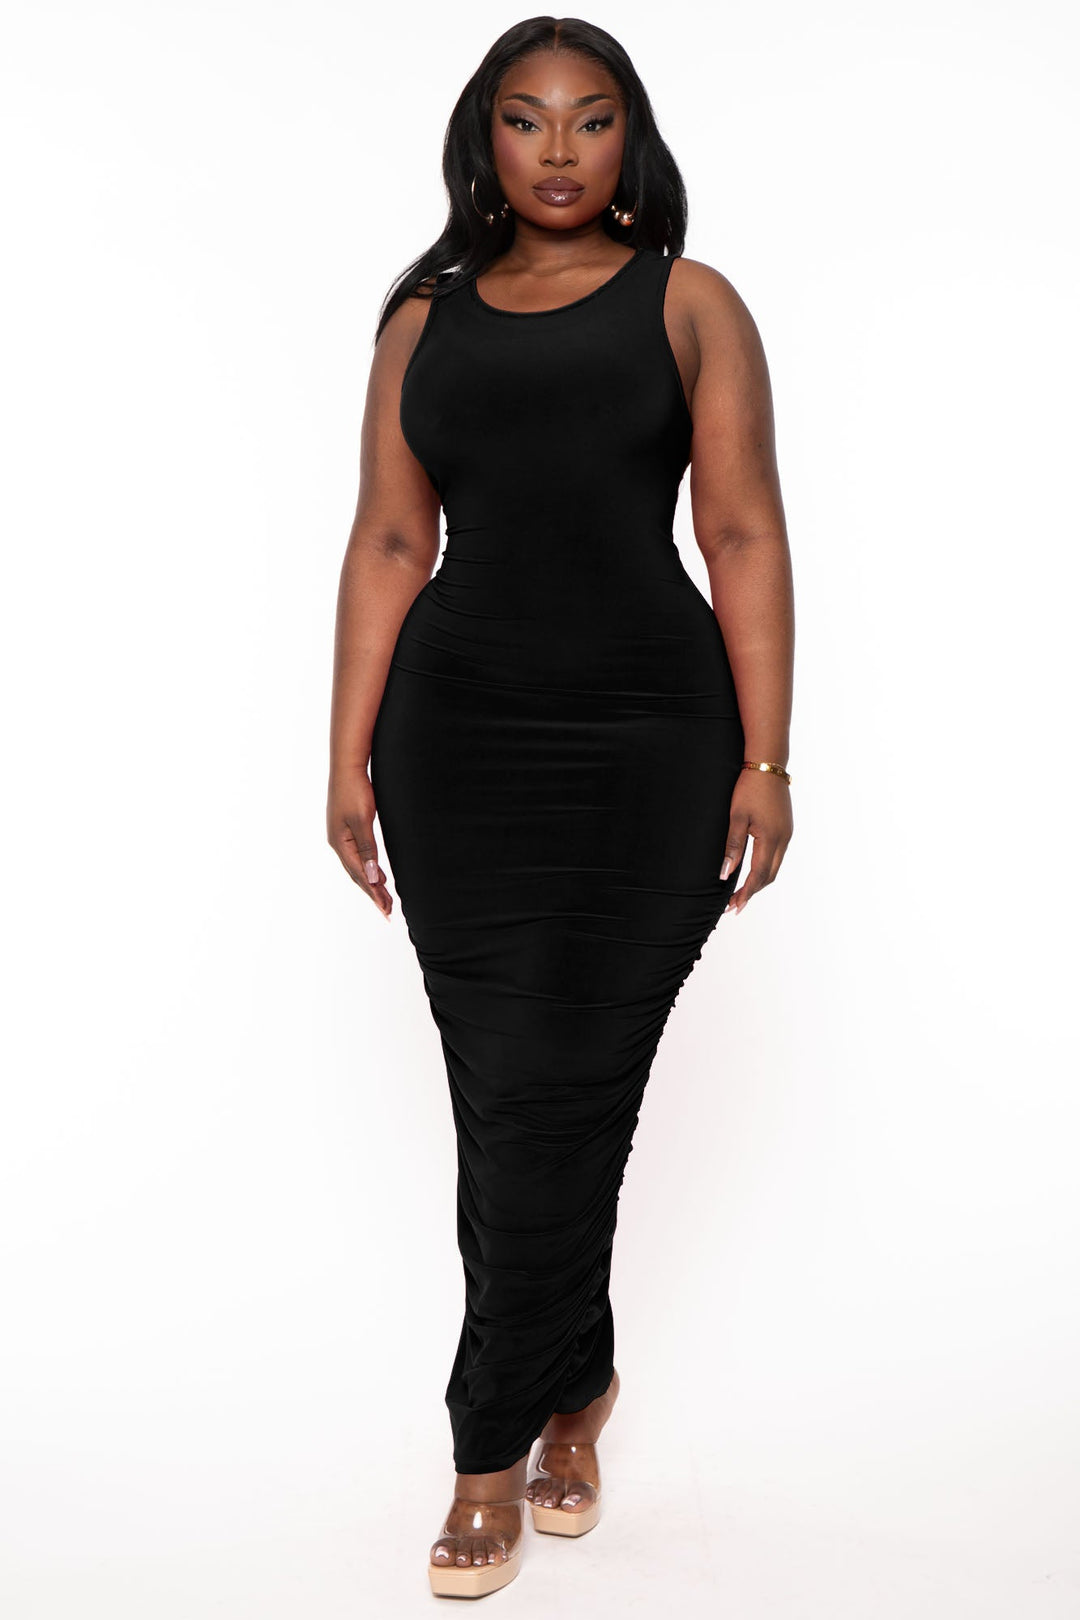 Plus Size Mamacita Fringe Dress - Black